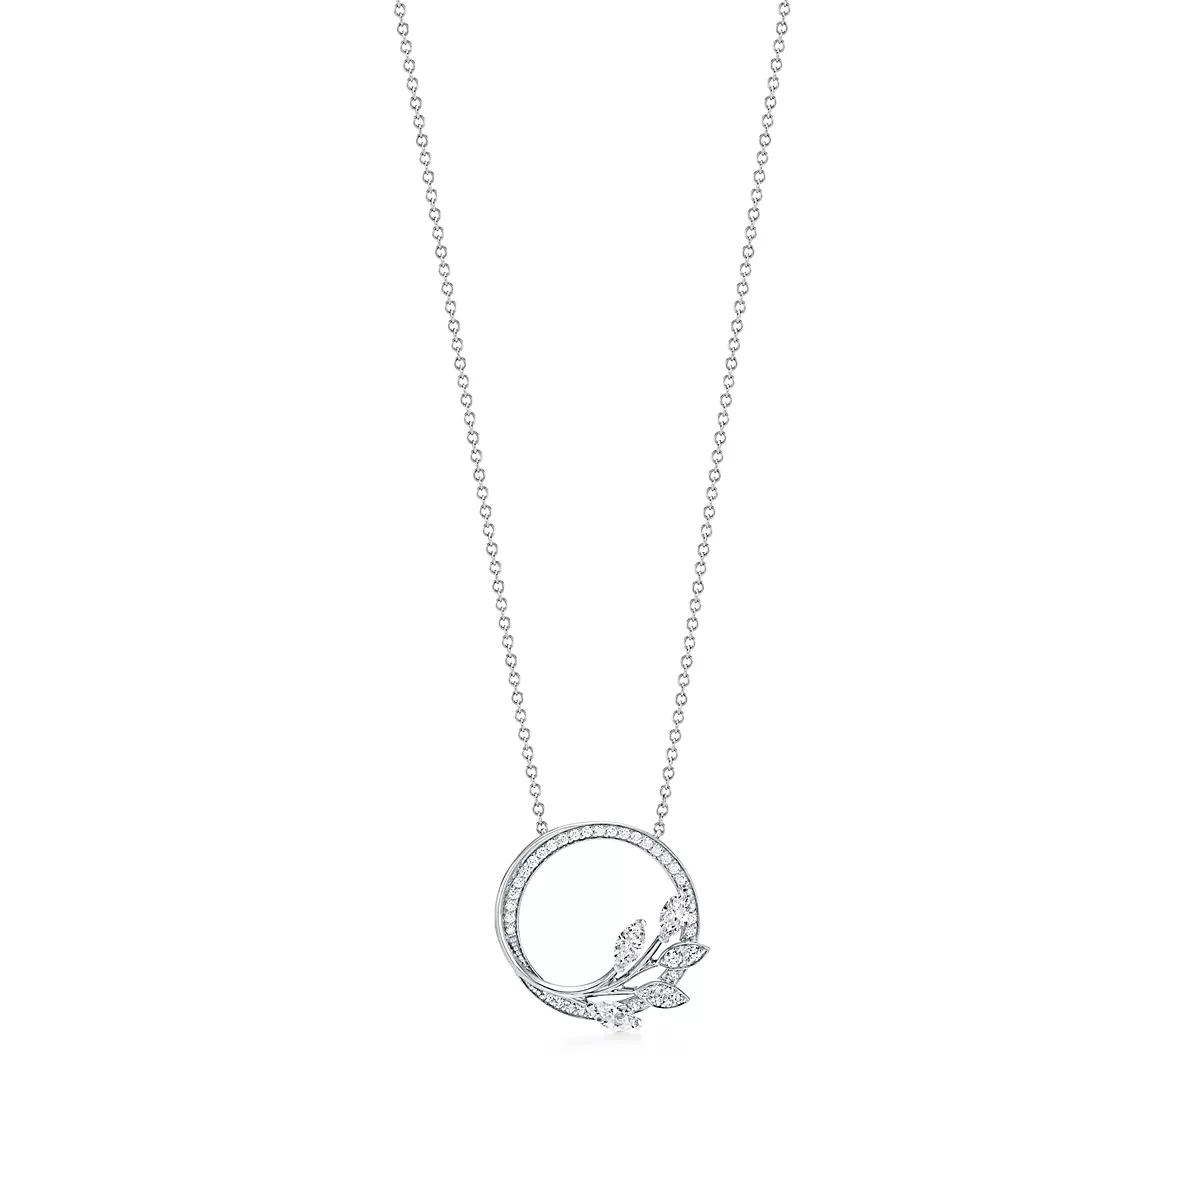 Tiffany Victoria Pendant w/Chain 플래티늄 라운드 브릴리언트 다이아몬드 One Scale